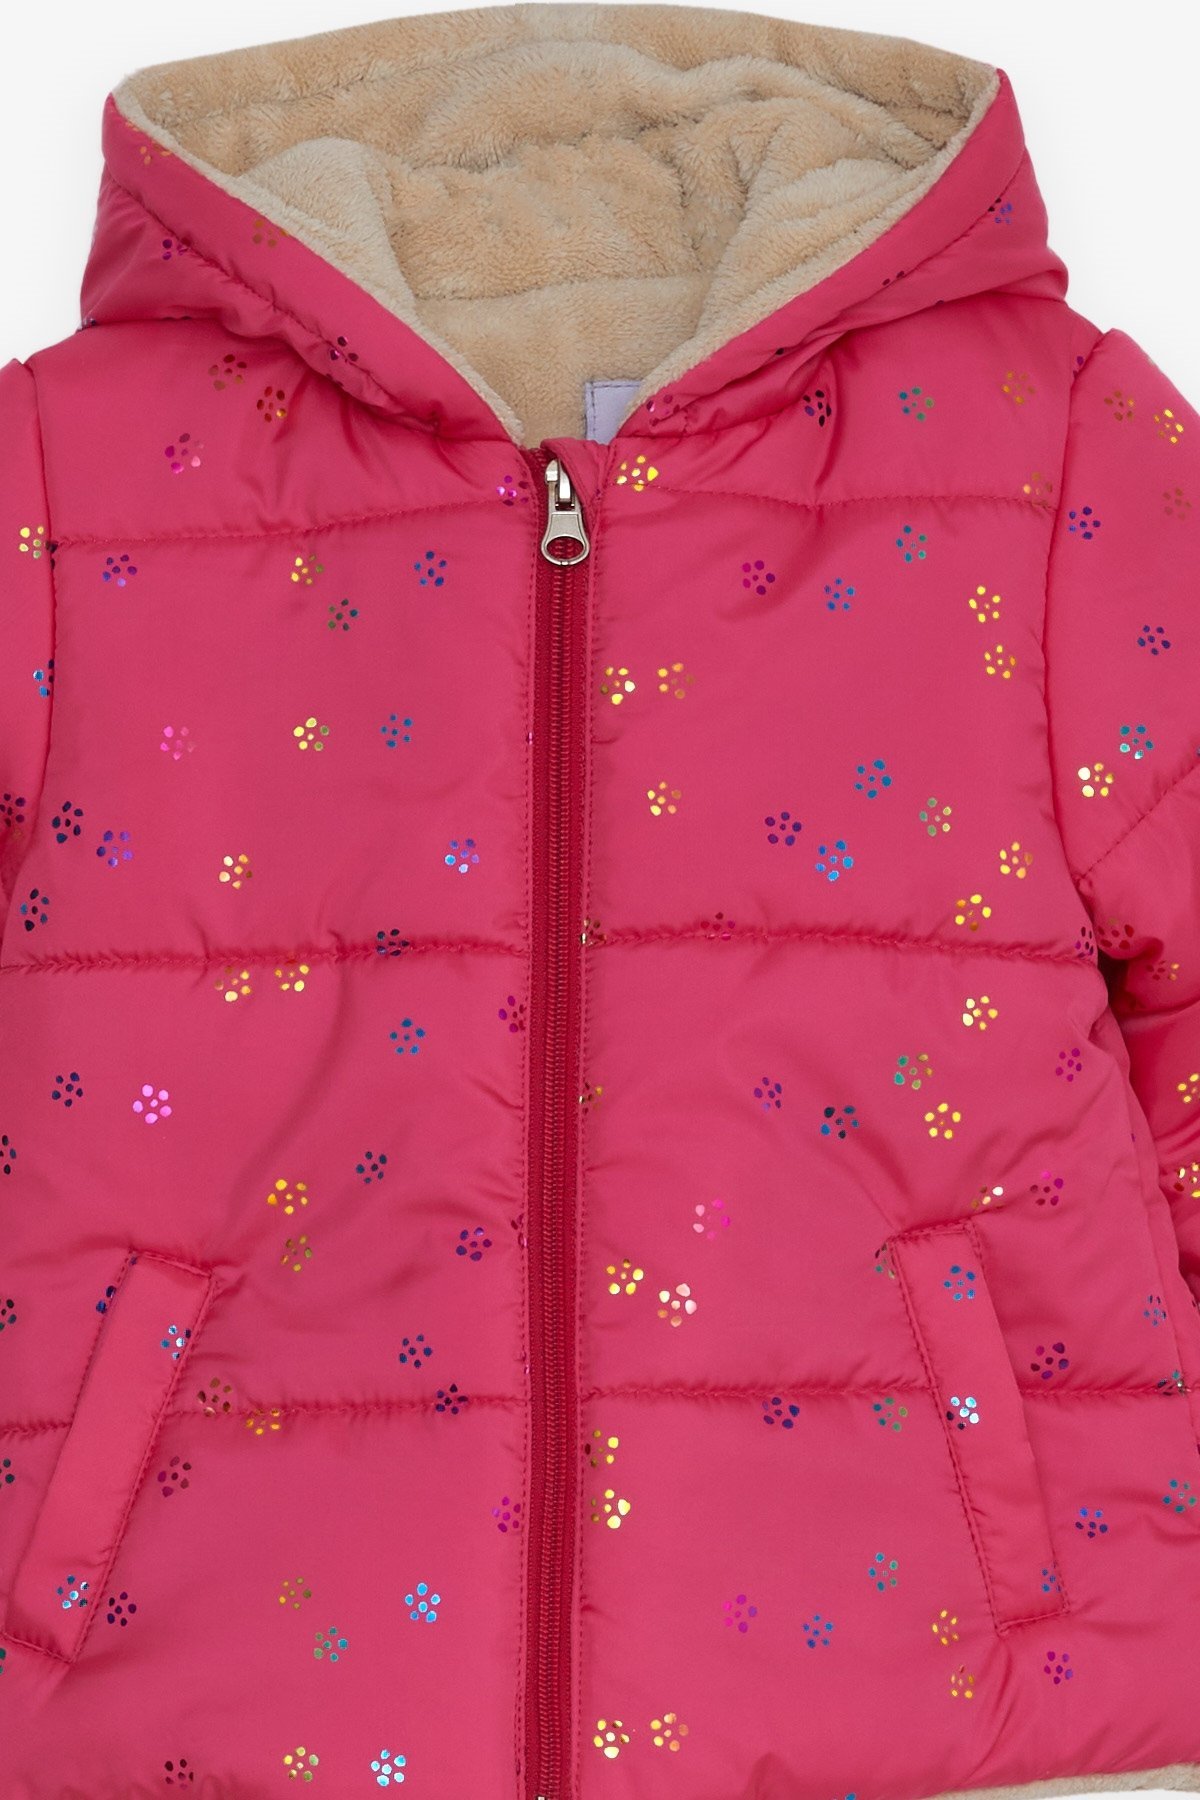 Kız Bebek Mont Renkli Sim Desenli Fuşya 6 Ay-1 Yaş - Bebek Montları ve  Yağmurlukları | Breeze